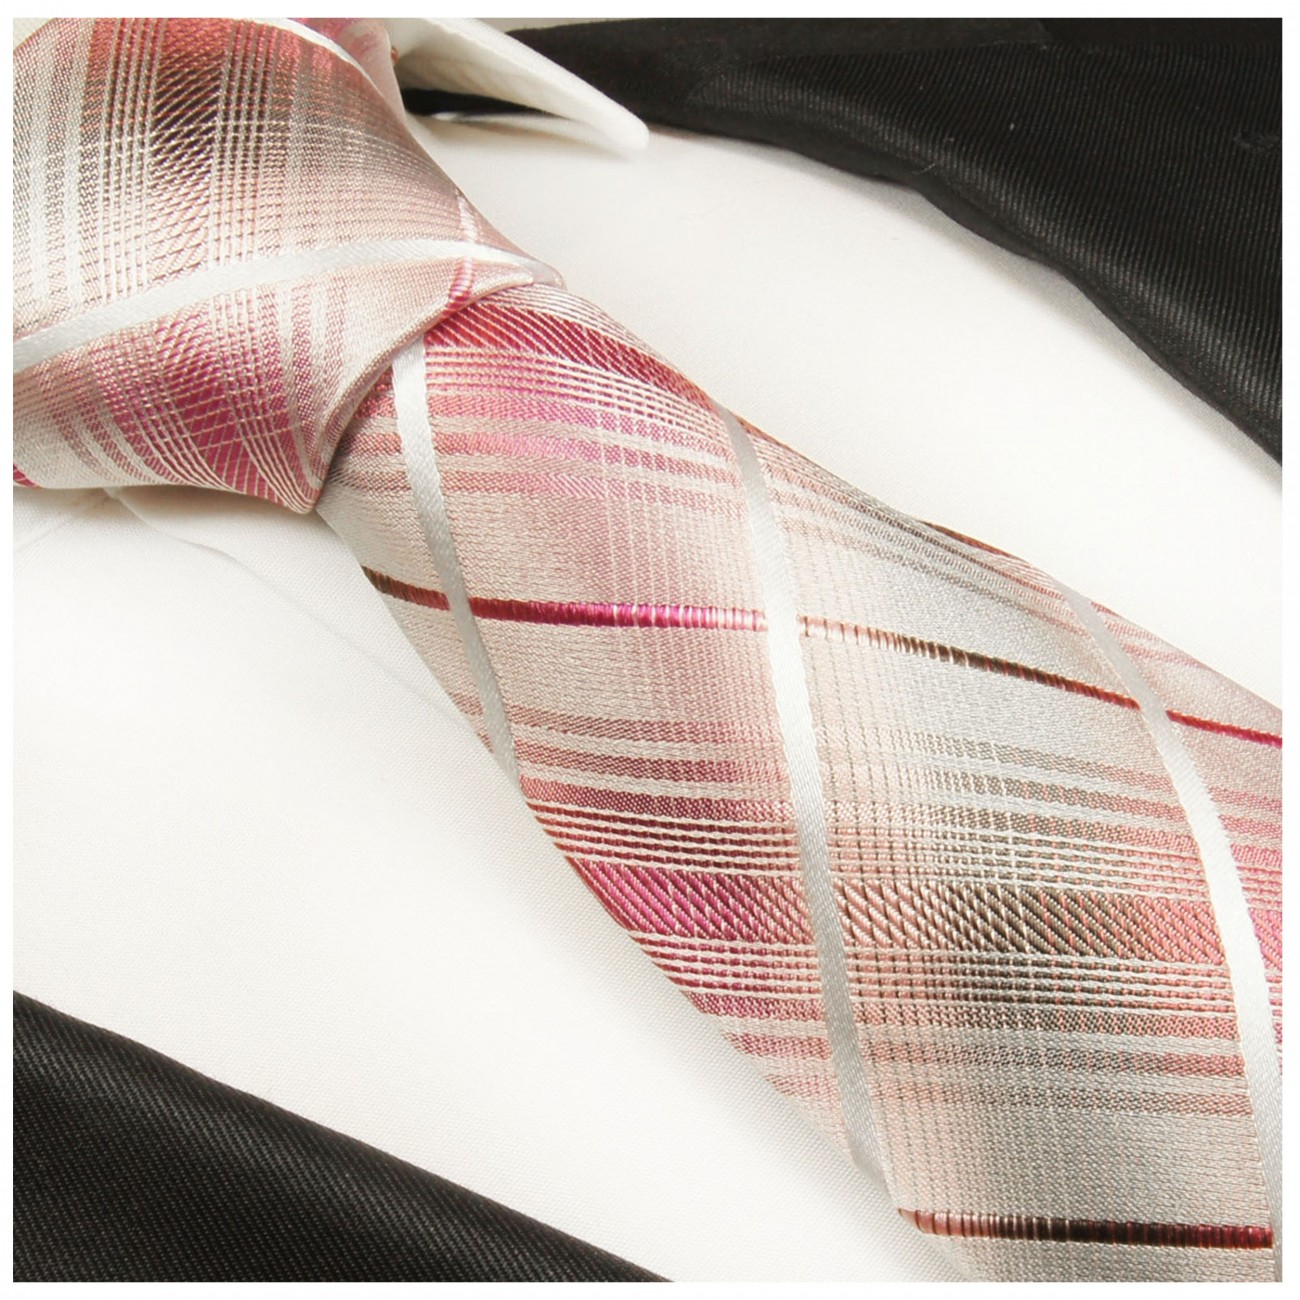 Krawatte pink grau gestreift Seidenkrawatte - Seide - Krawatte mit Einstecktuch und Manschettenknöpfe